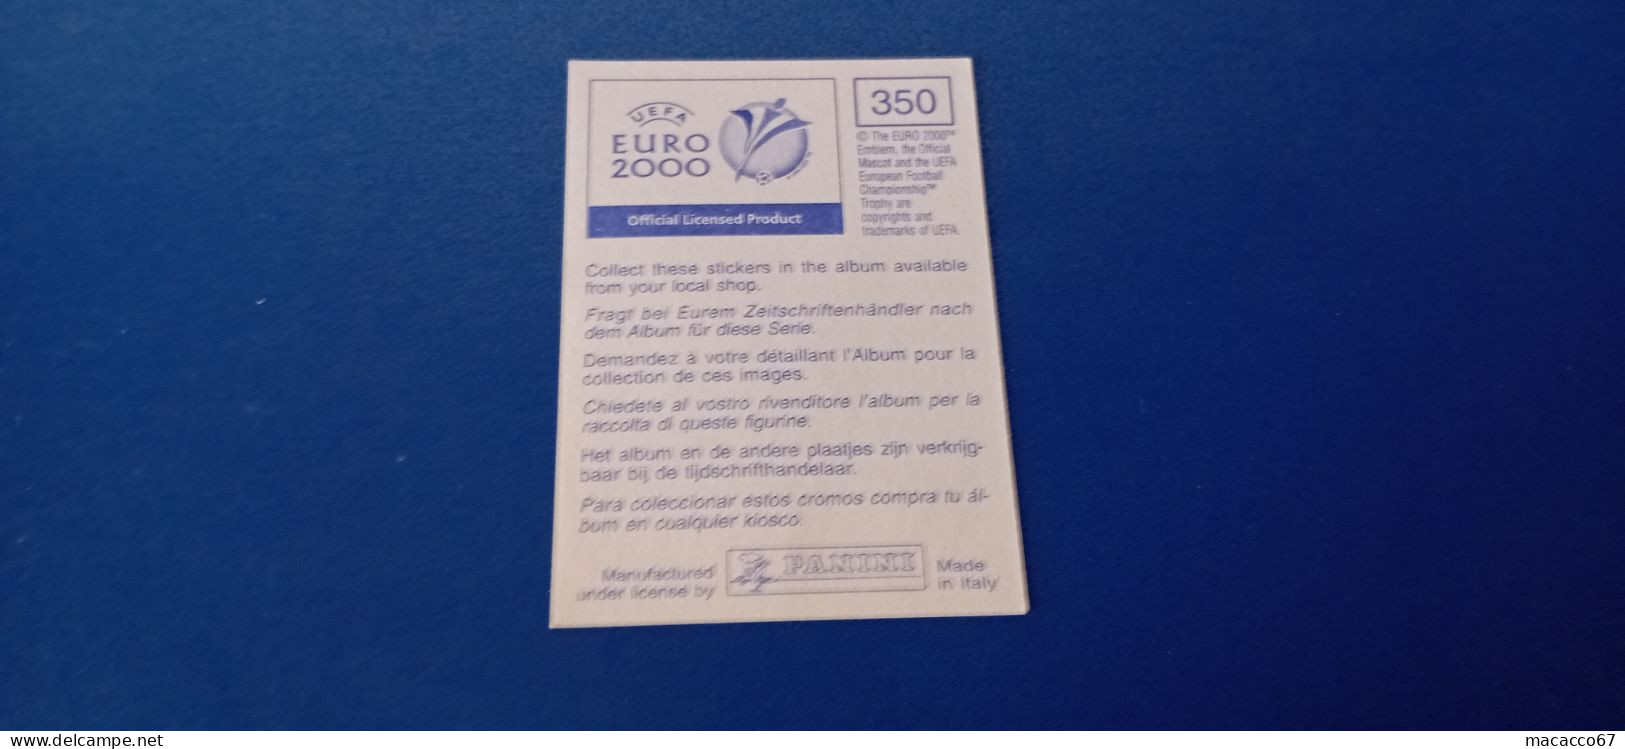 Figurina Panini Euro 2000 - 350 Micaud Francia - Italian Edition